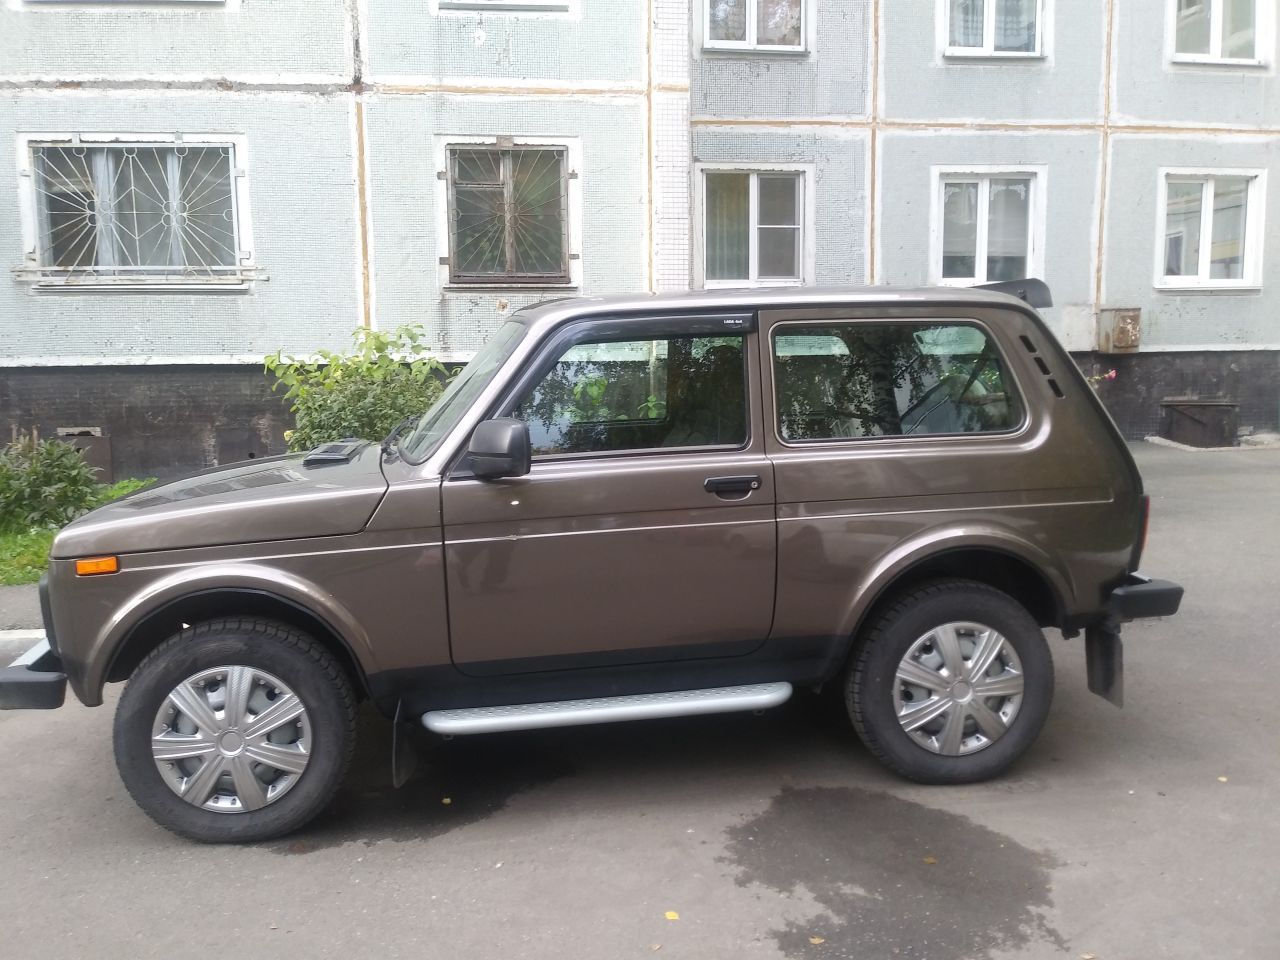 Купить Лада 4x4 Нива в России: продажа ВАЗ Нива с пробегом и новых, цены.